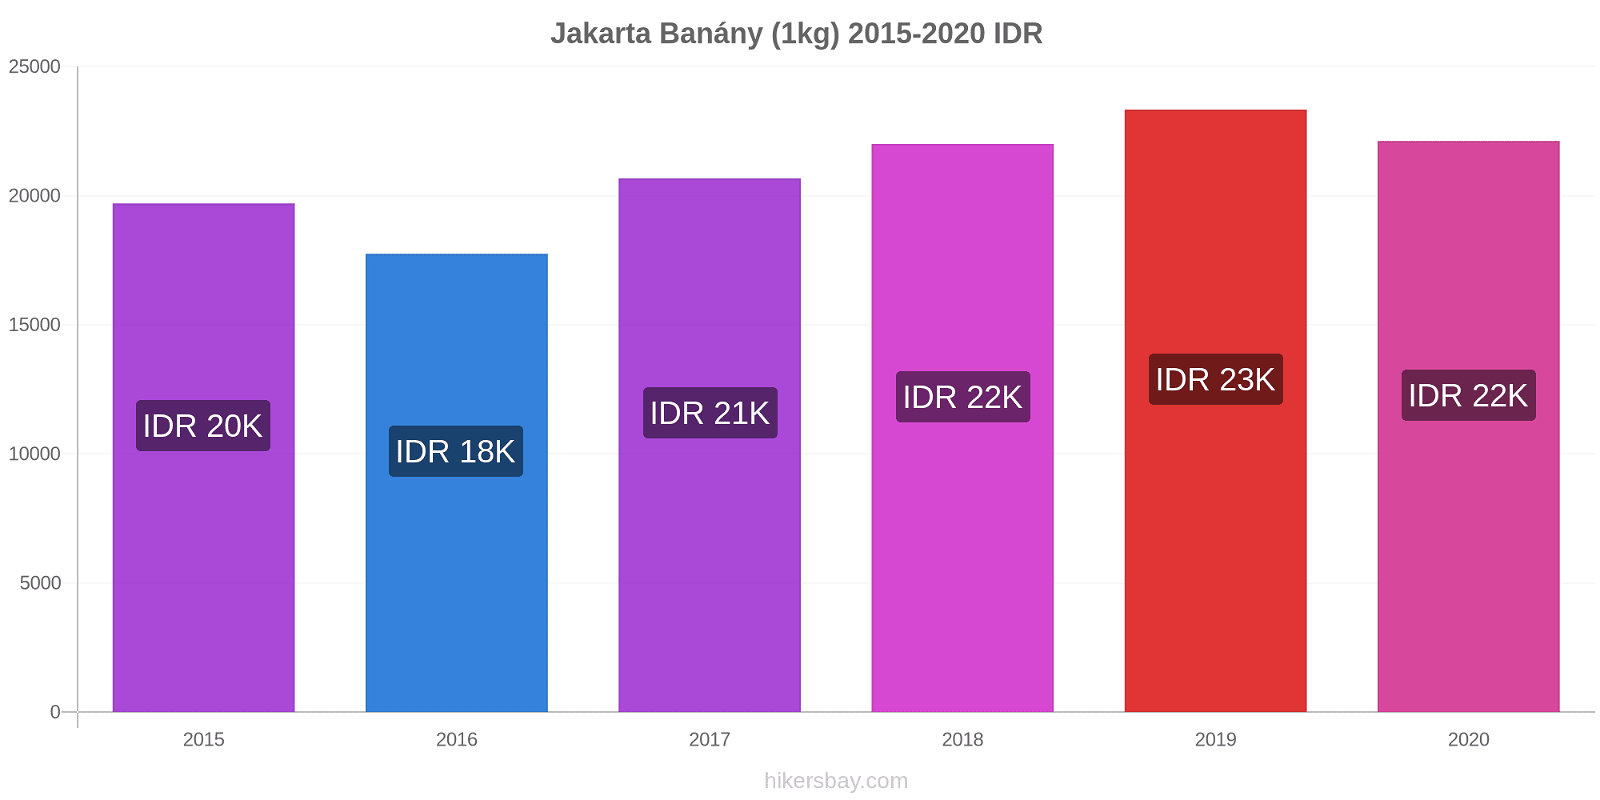 Jakarta změny cen Banány (1kg) hikersbay.com